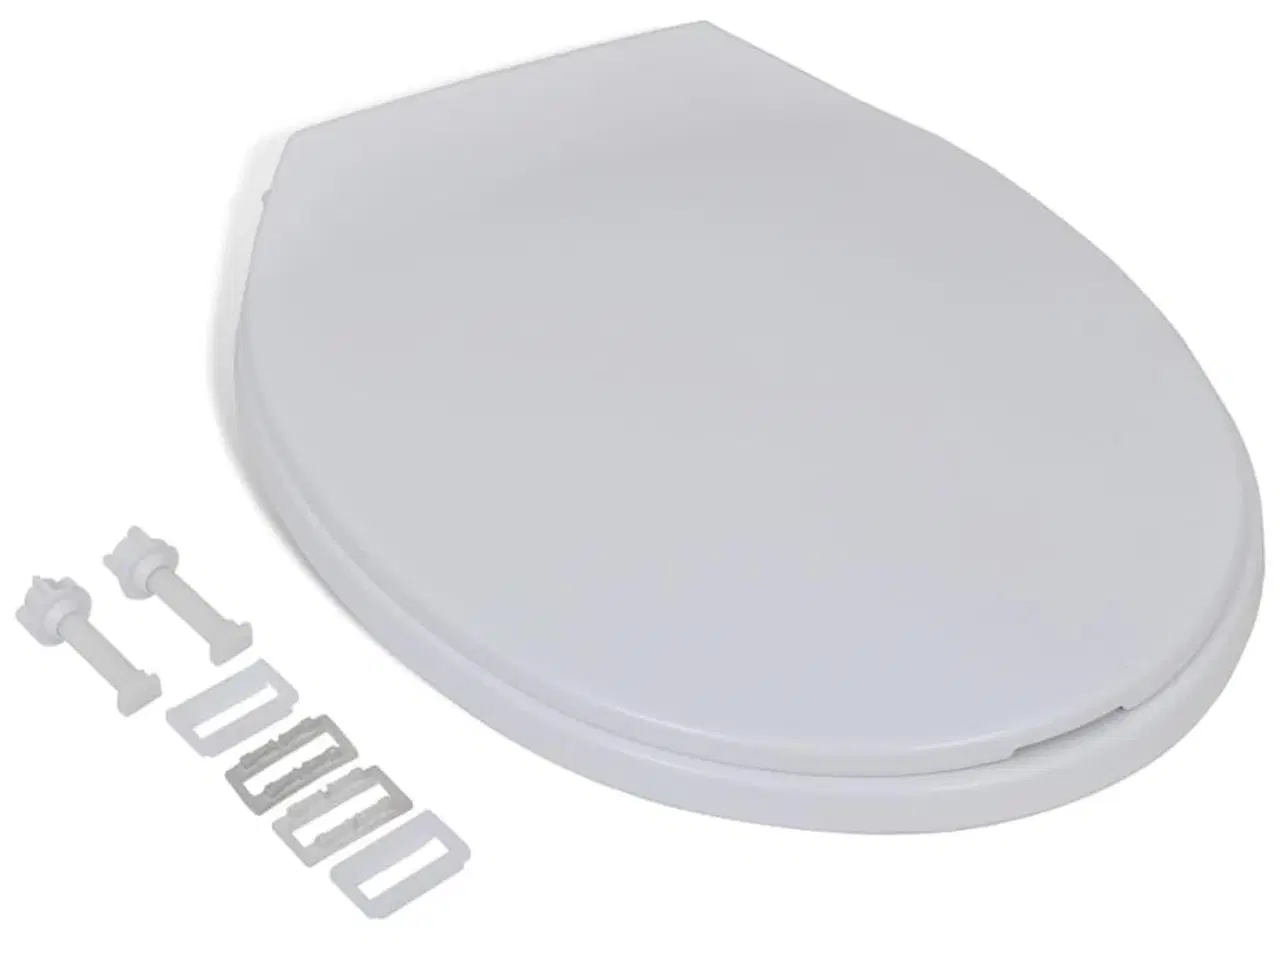 Billede 2 - Soft close-toiletsæde oval hvid